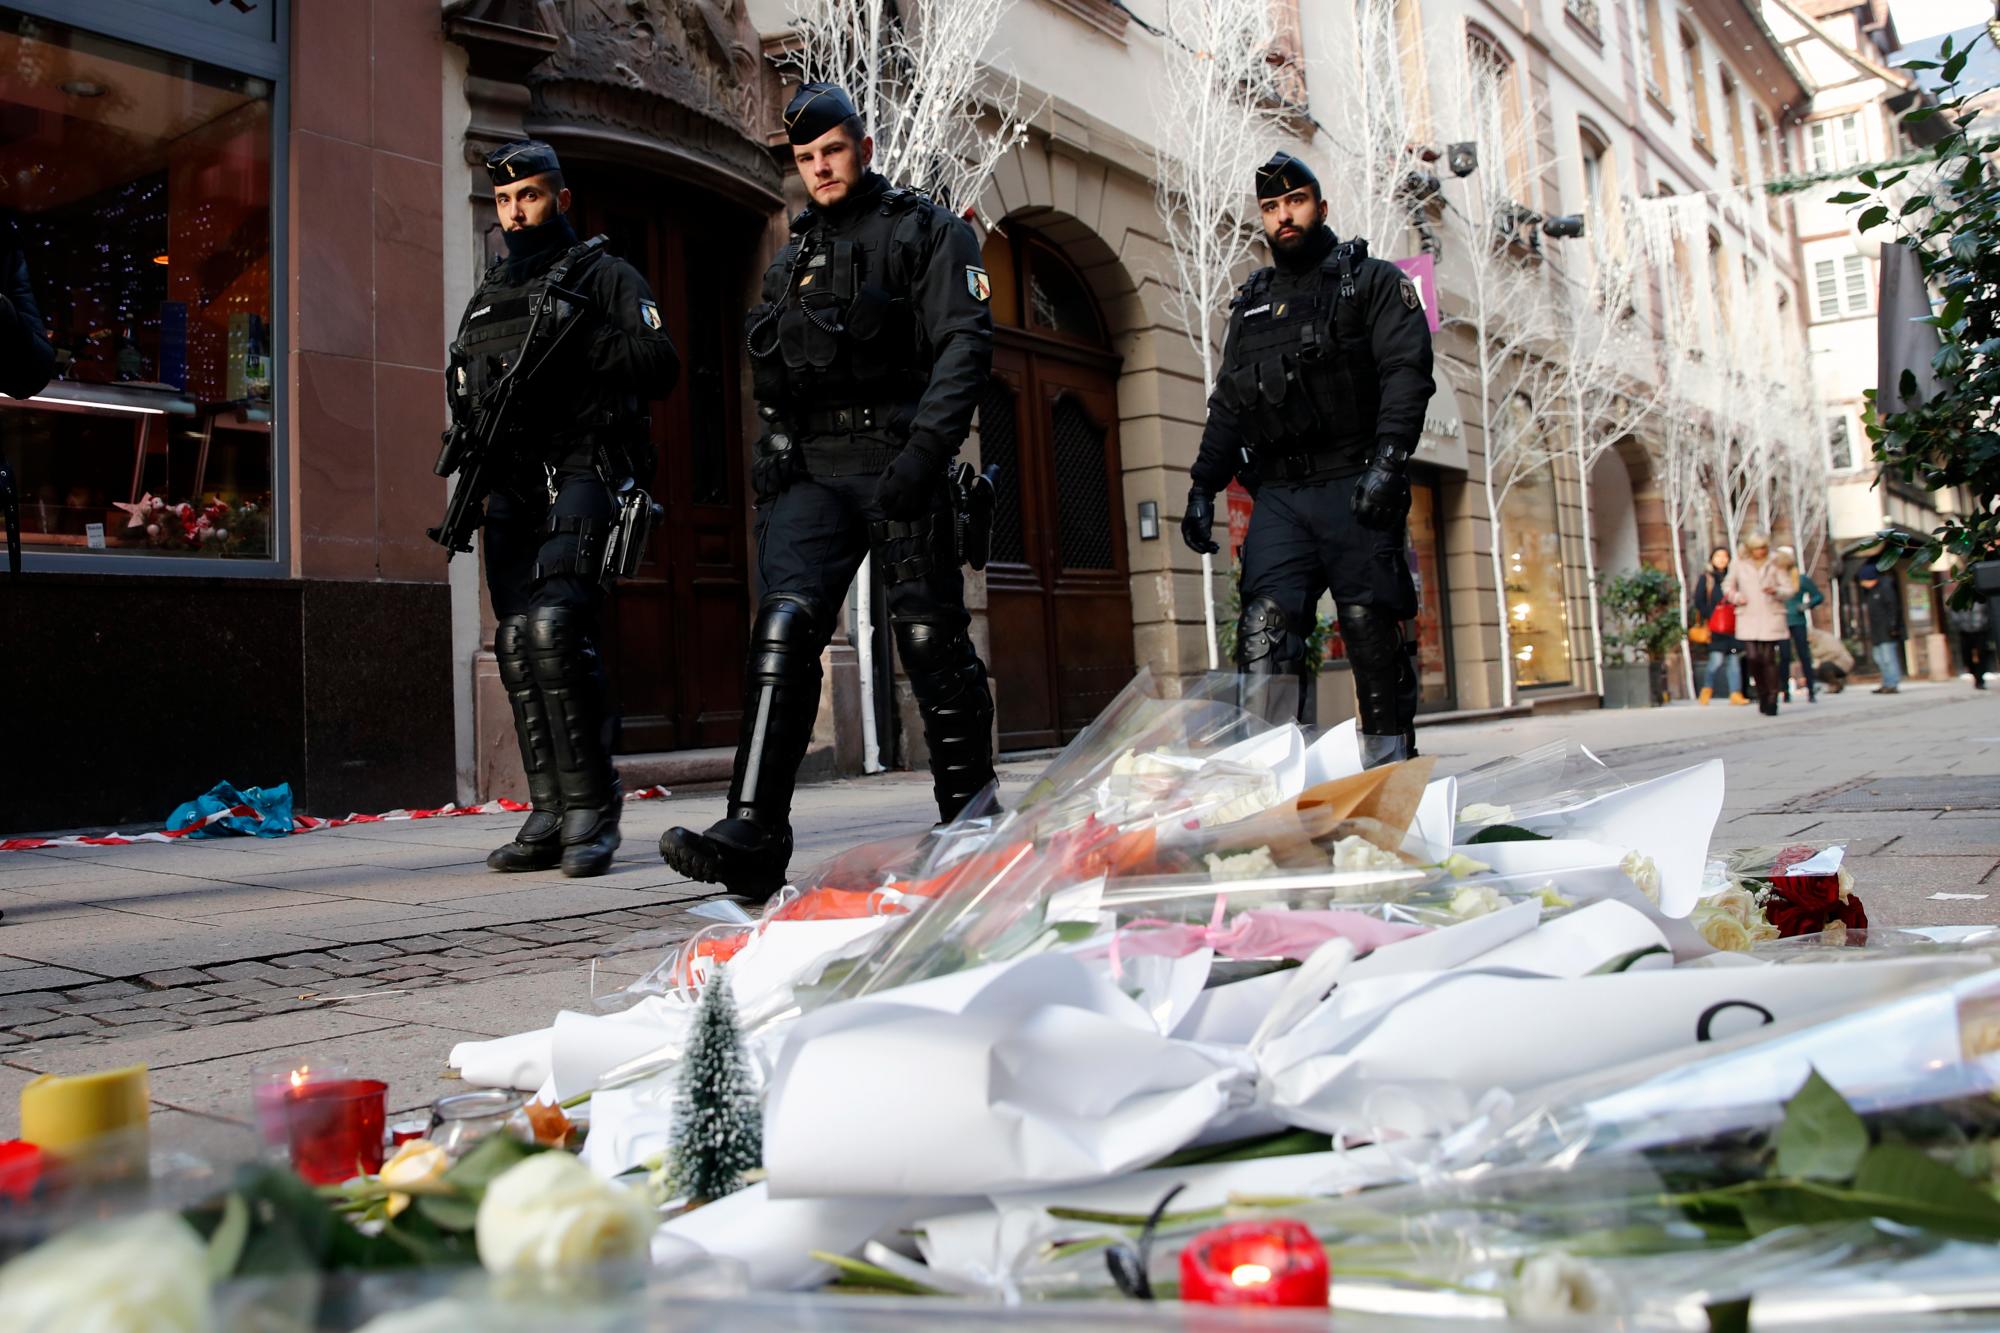 Fuerzas especiales patrullan en la busqueda del sospechoso. Francia lloró con flores y encendió velas en el lugar del ataque cerca de su famoso mercado navideño.